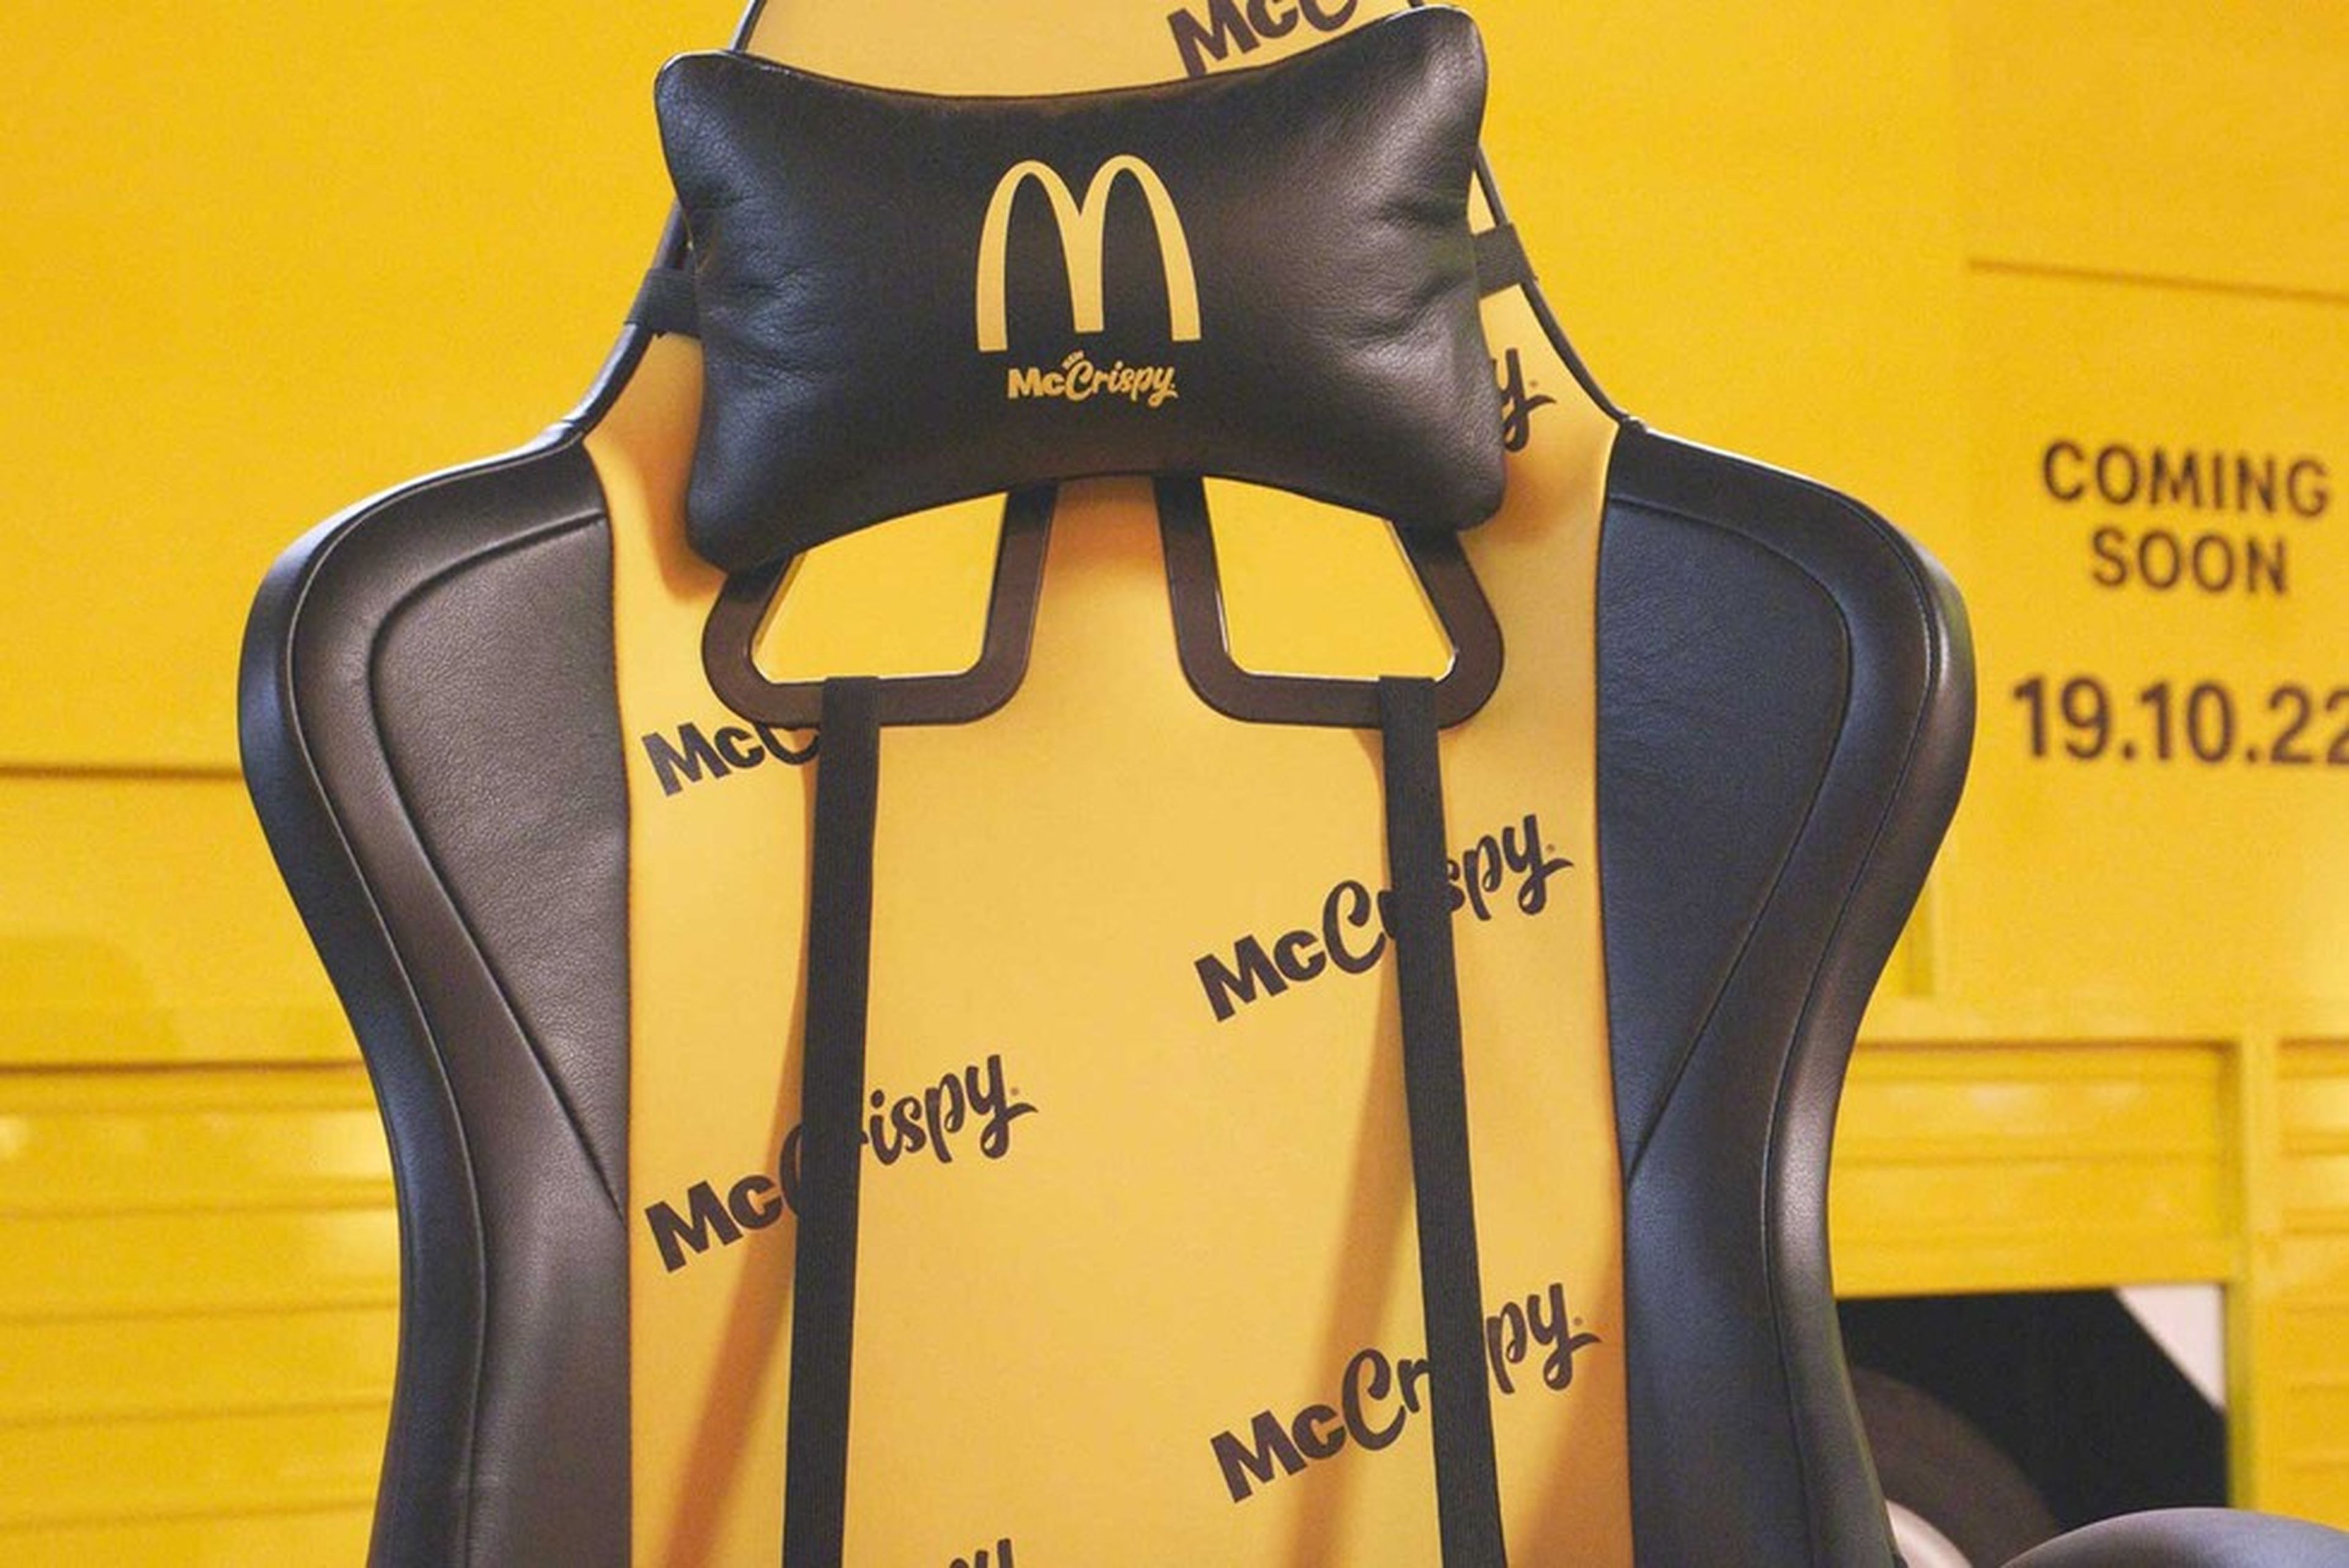 Silla gaming de McDonalds